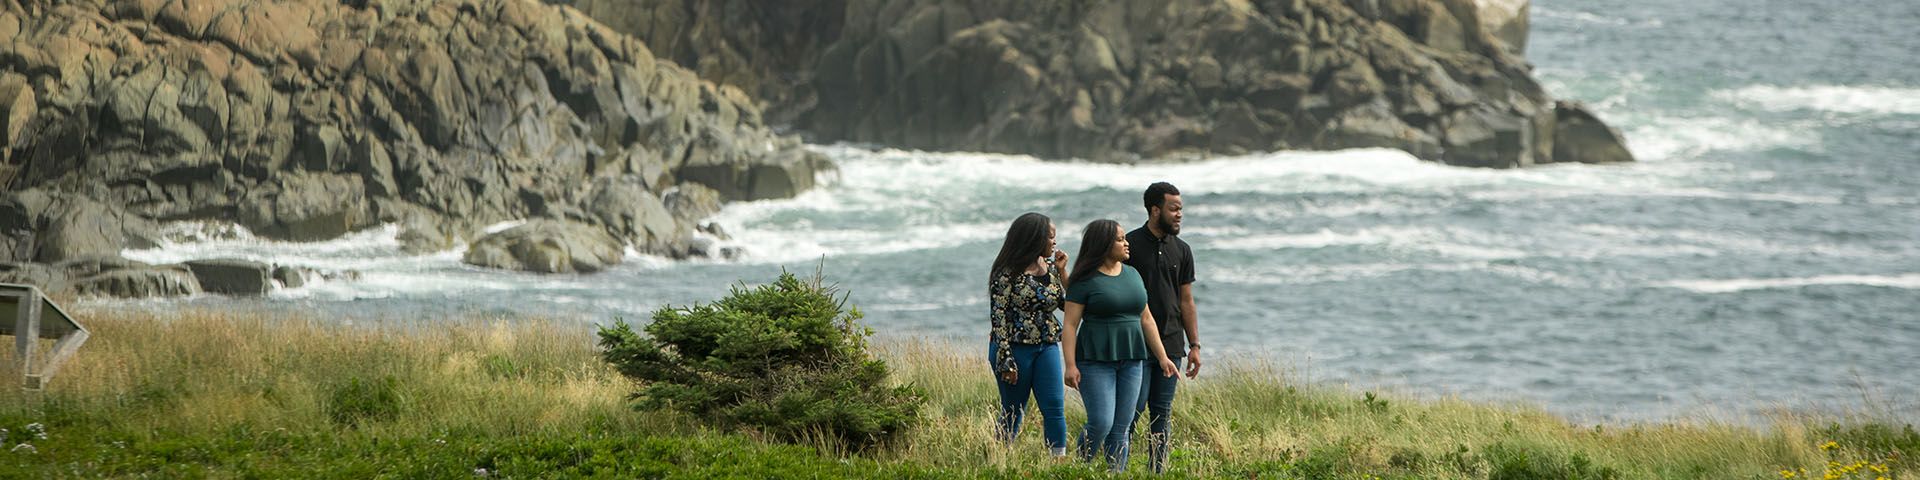 Trois personnes marchent le long du littoral avec l'océan et de grands rochers en arrière-plan.